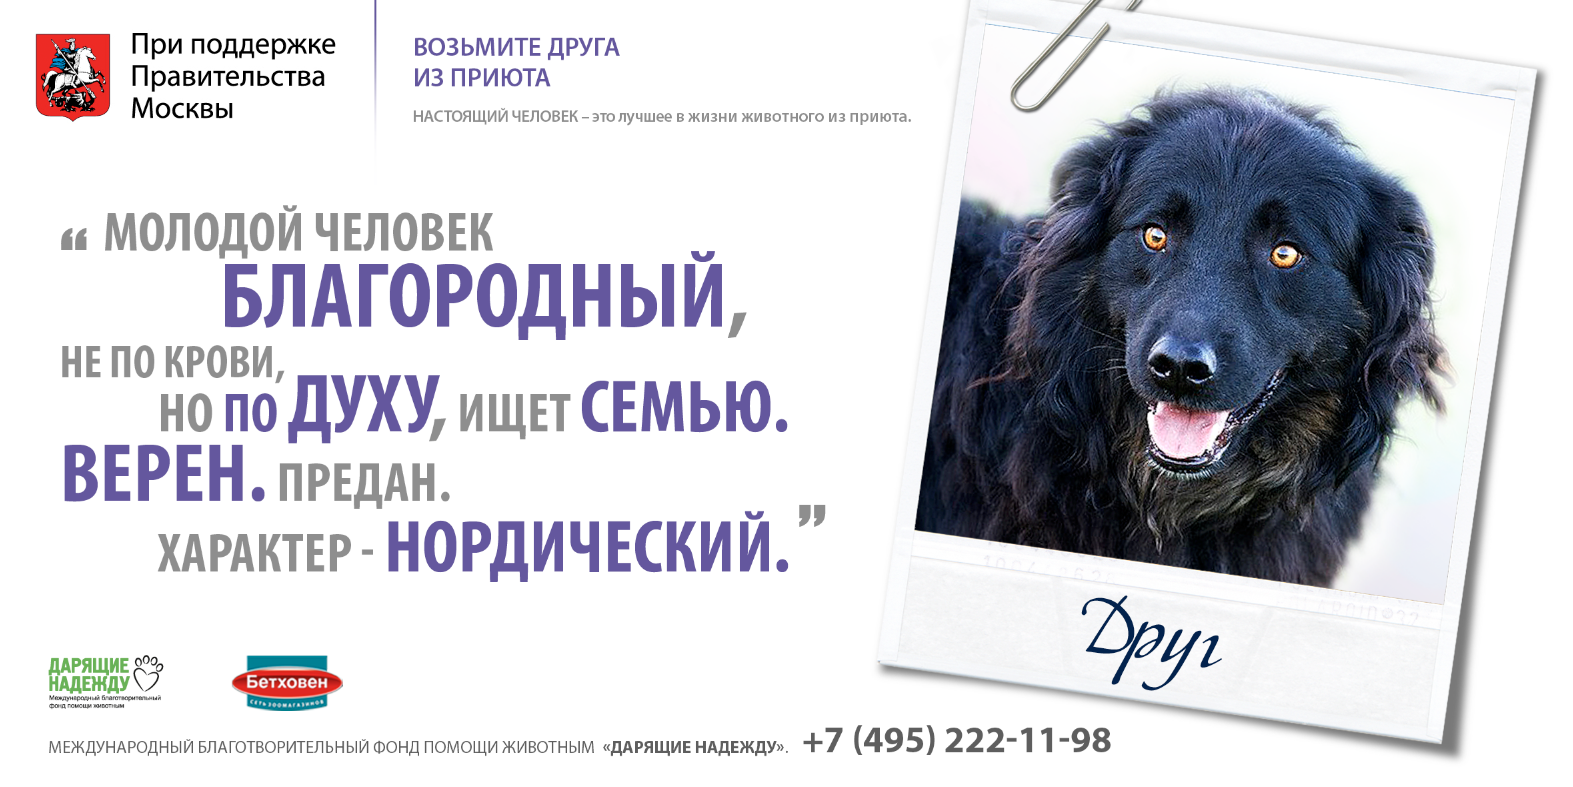 Слоган помощь. Реклама приюта для животных. Социальная реклама приюта для животных. Реклама приюта для собак. Реклама приюта для бездомных животных.